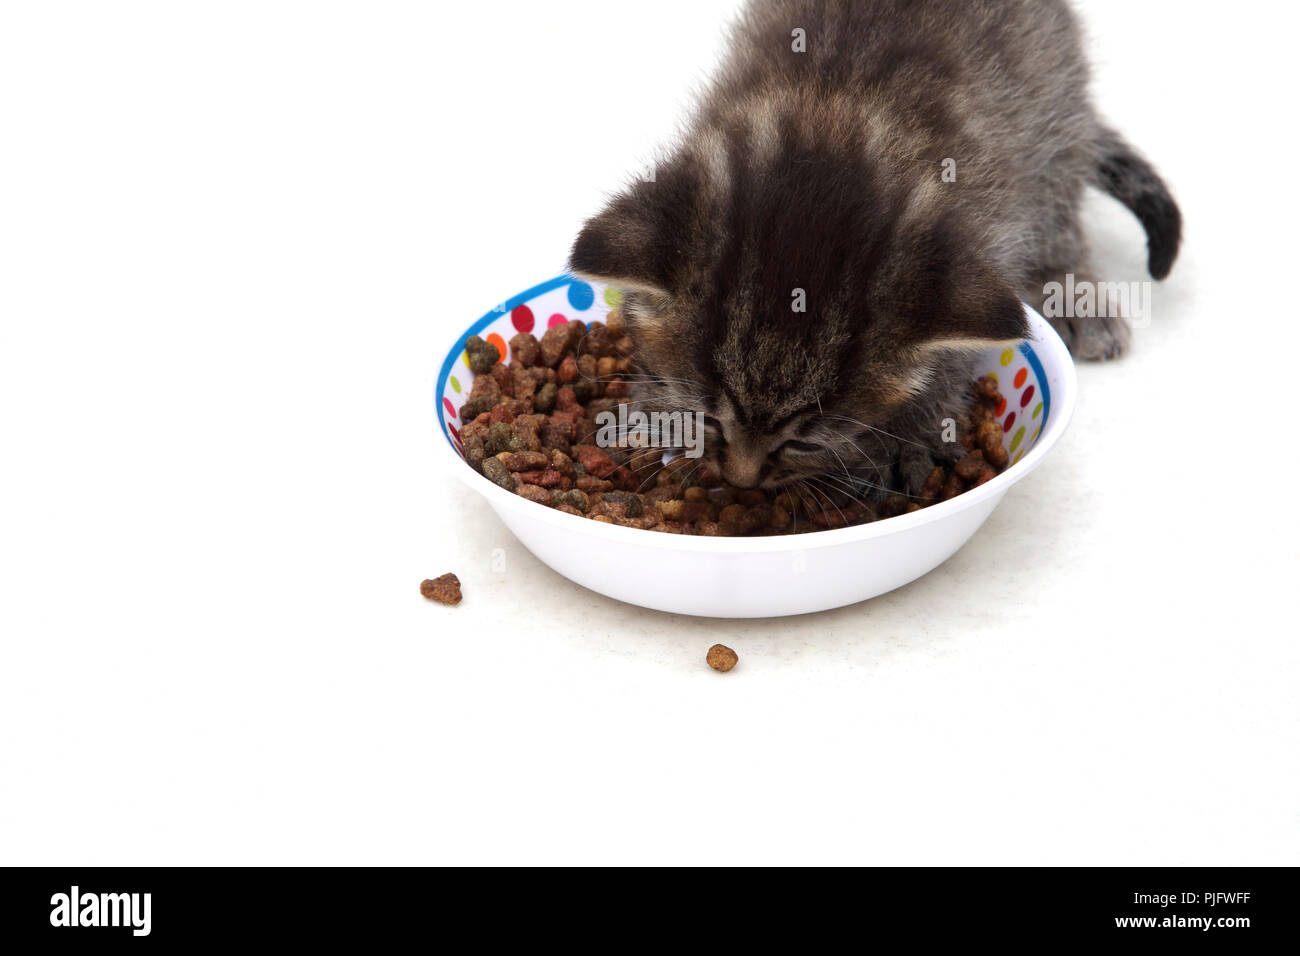 Tabby Kitten mangiare cibo essiccato da una ciotola Foto Stock